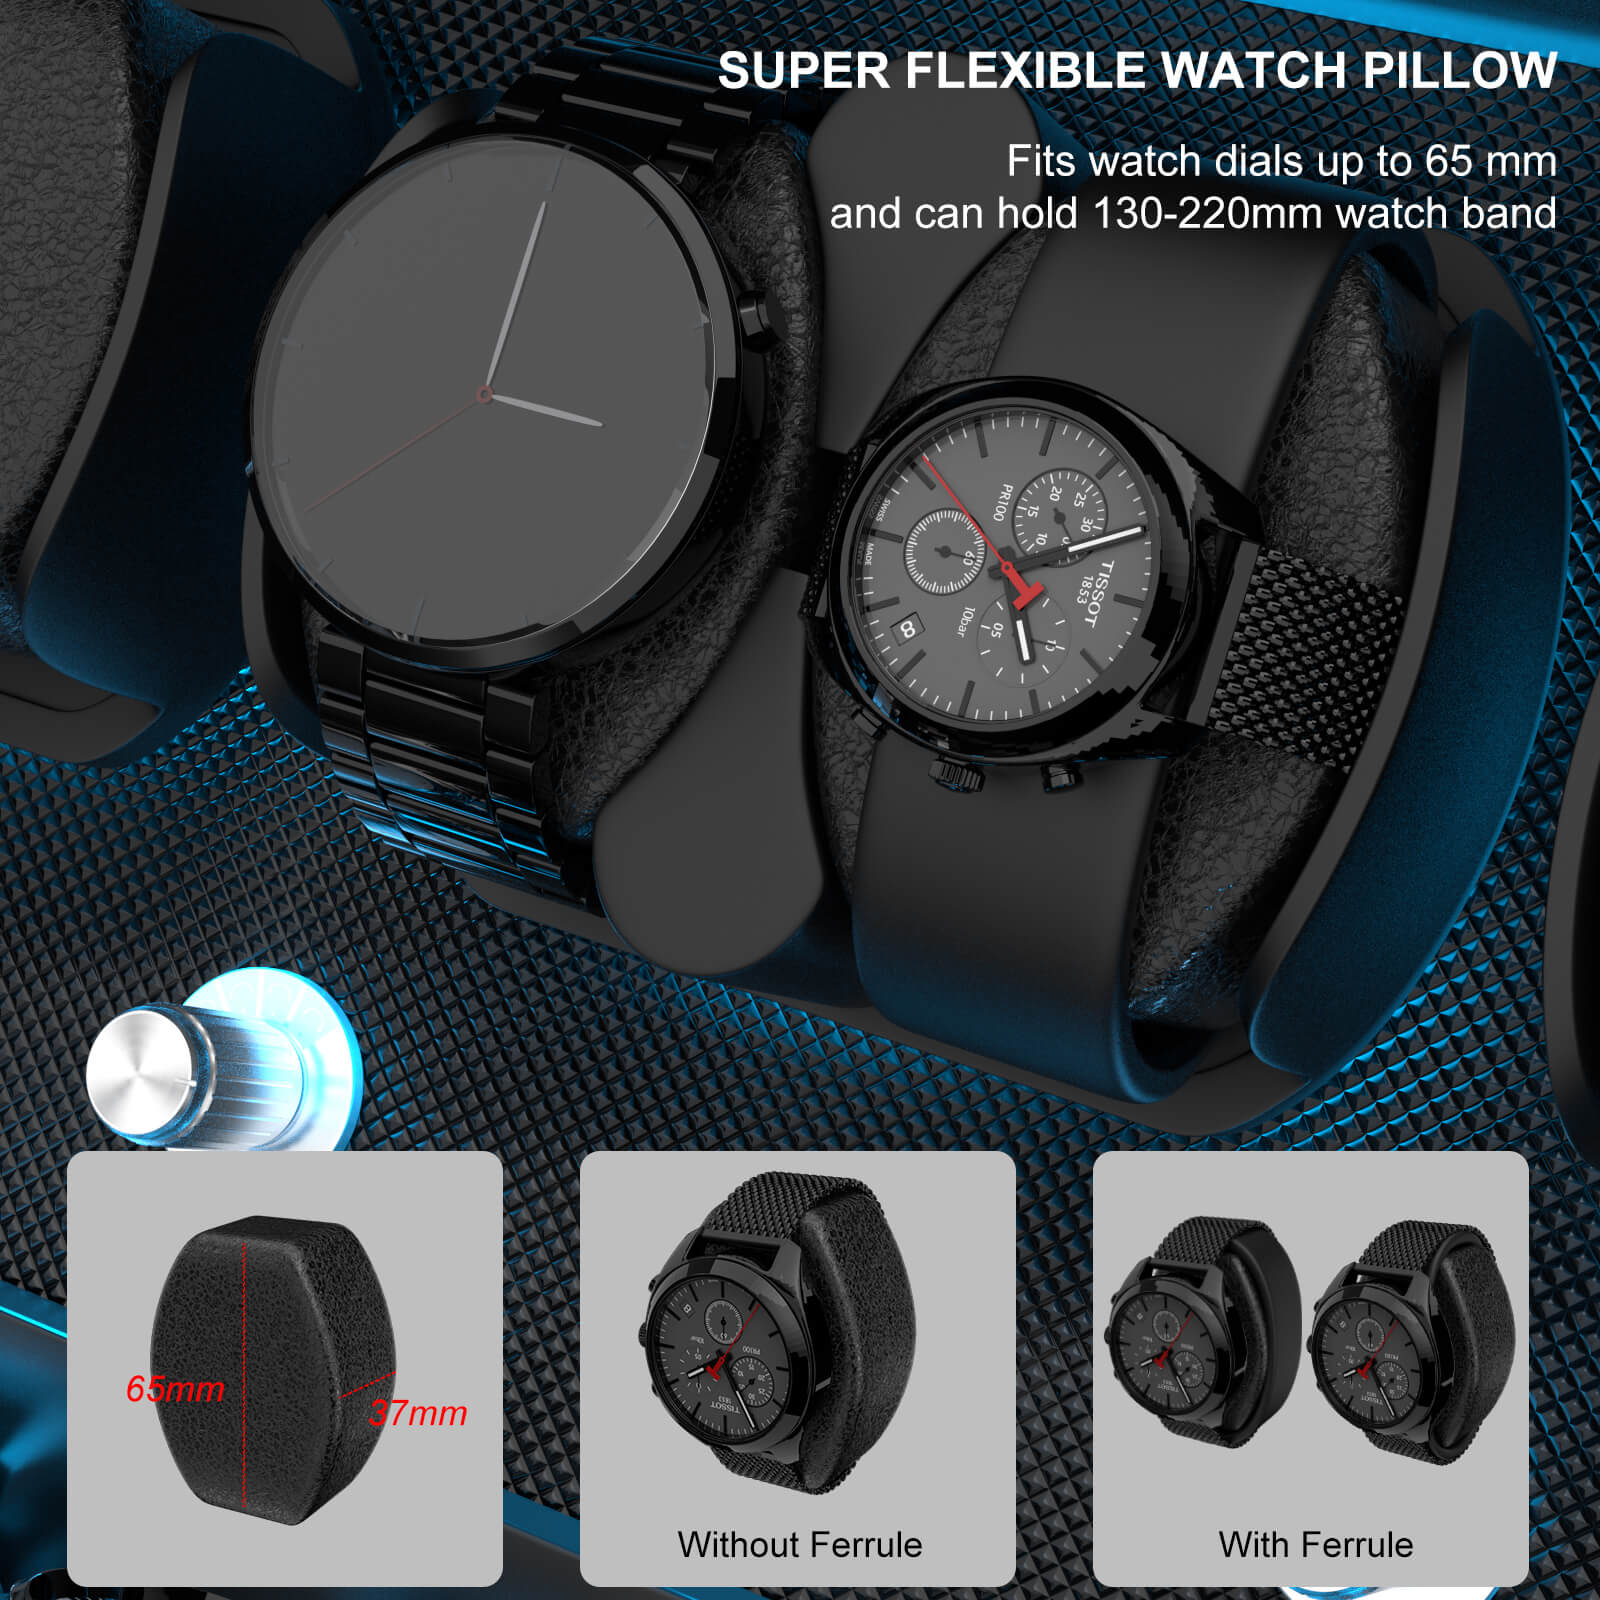 8 remontoirs de montres pour montres automatiques avec 4 moteurs Mabuchi silencieux de stockage supplémentaires - Noir